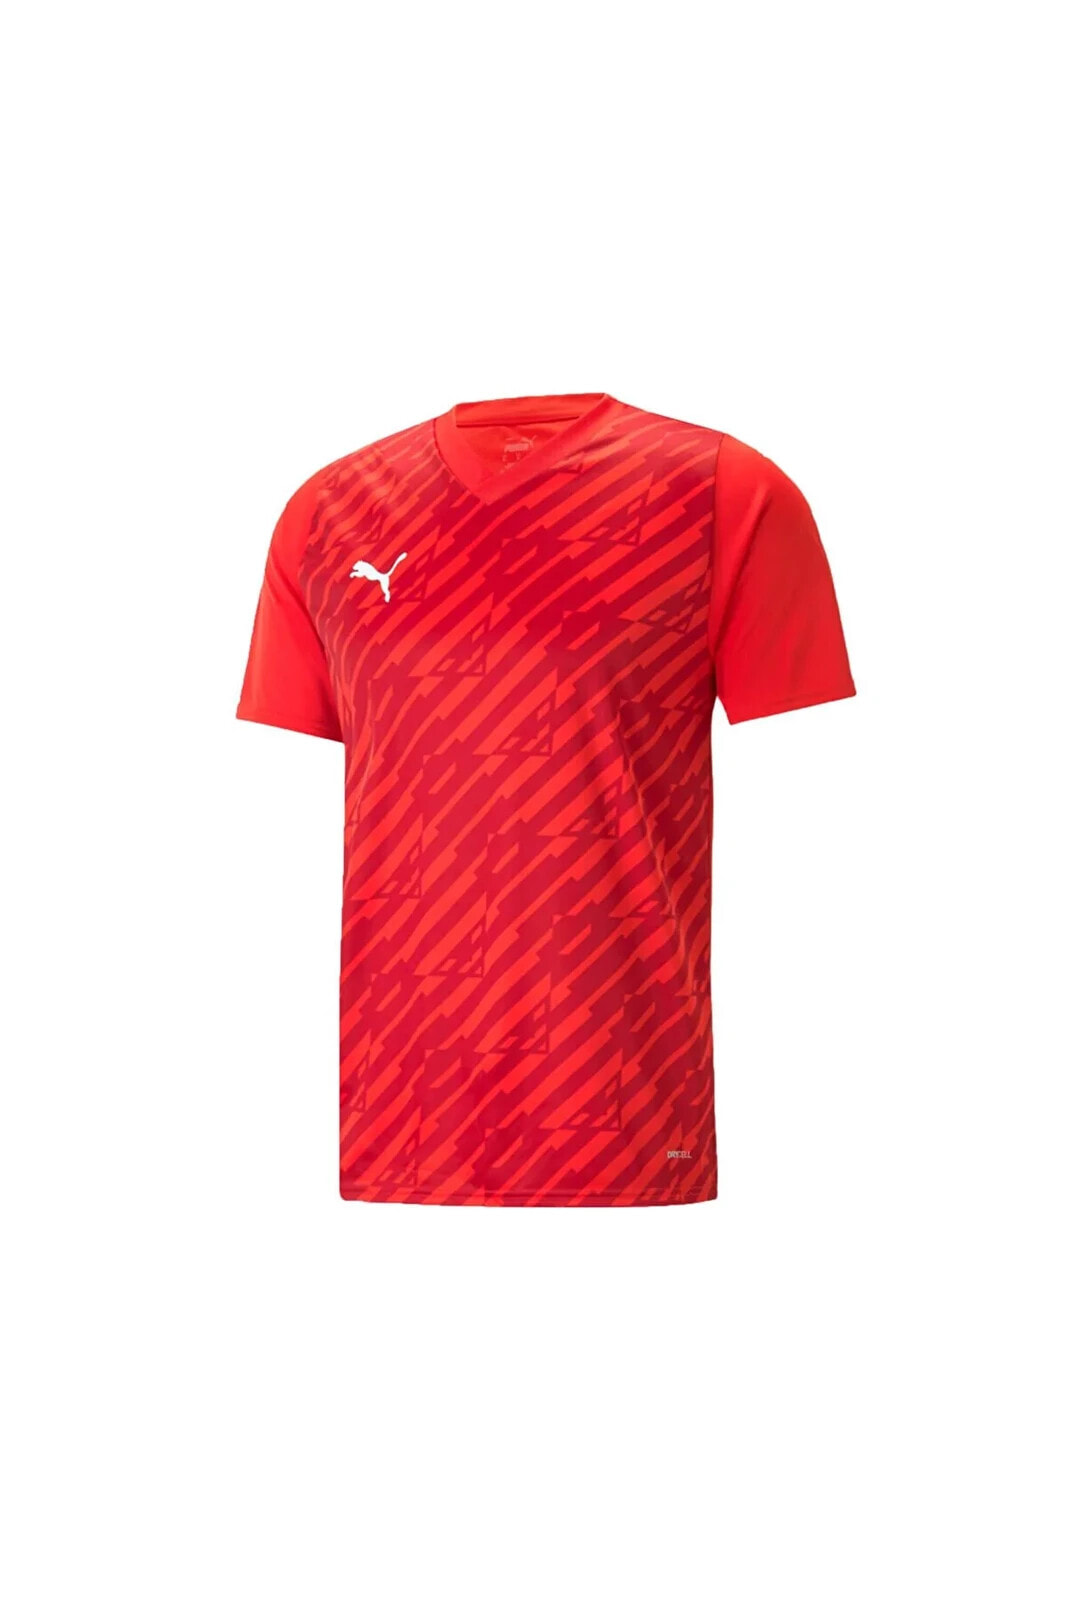 Teamultimate Jersey Erkek Futbol Maç Forması 70537101 Kırmızı